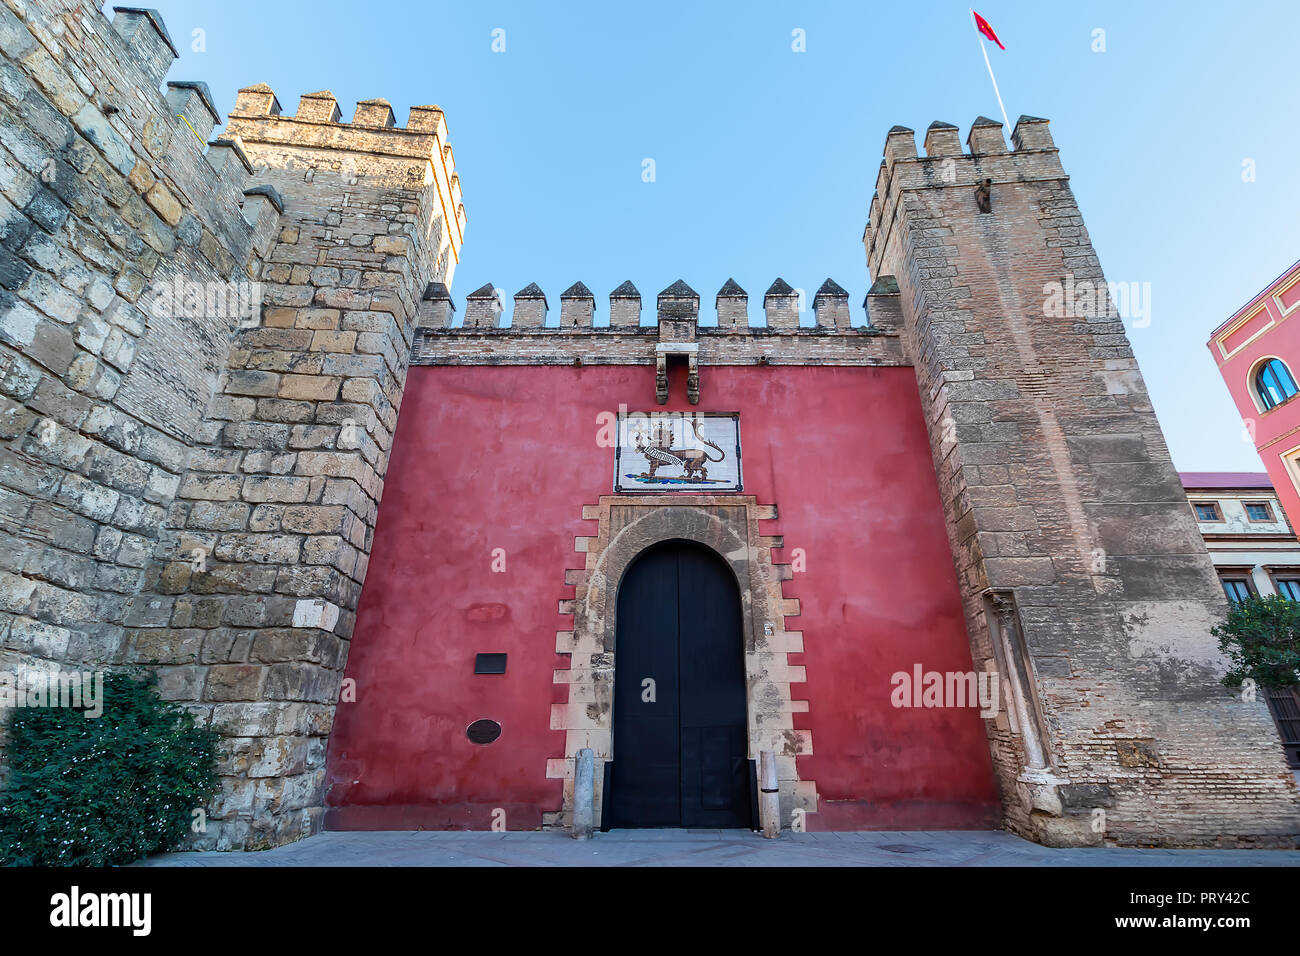 Entrée détail de l'Alcazar Royal Palace. Séville (Séville), Andalousie, espagne. Banque D'Images